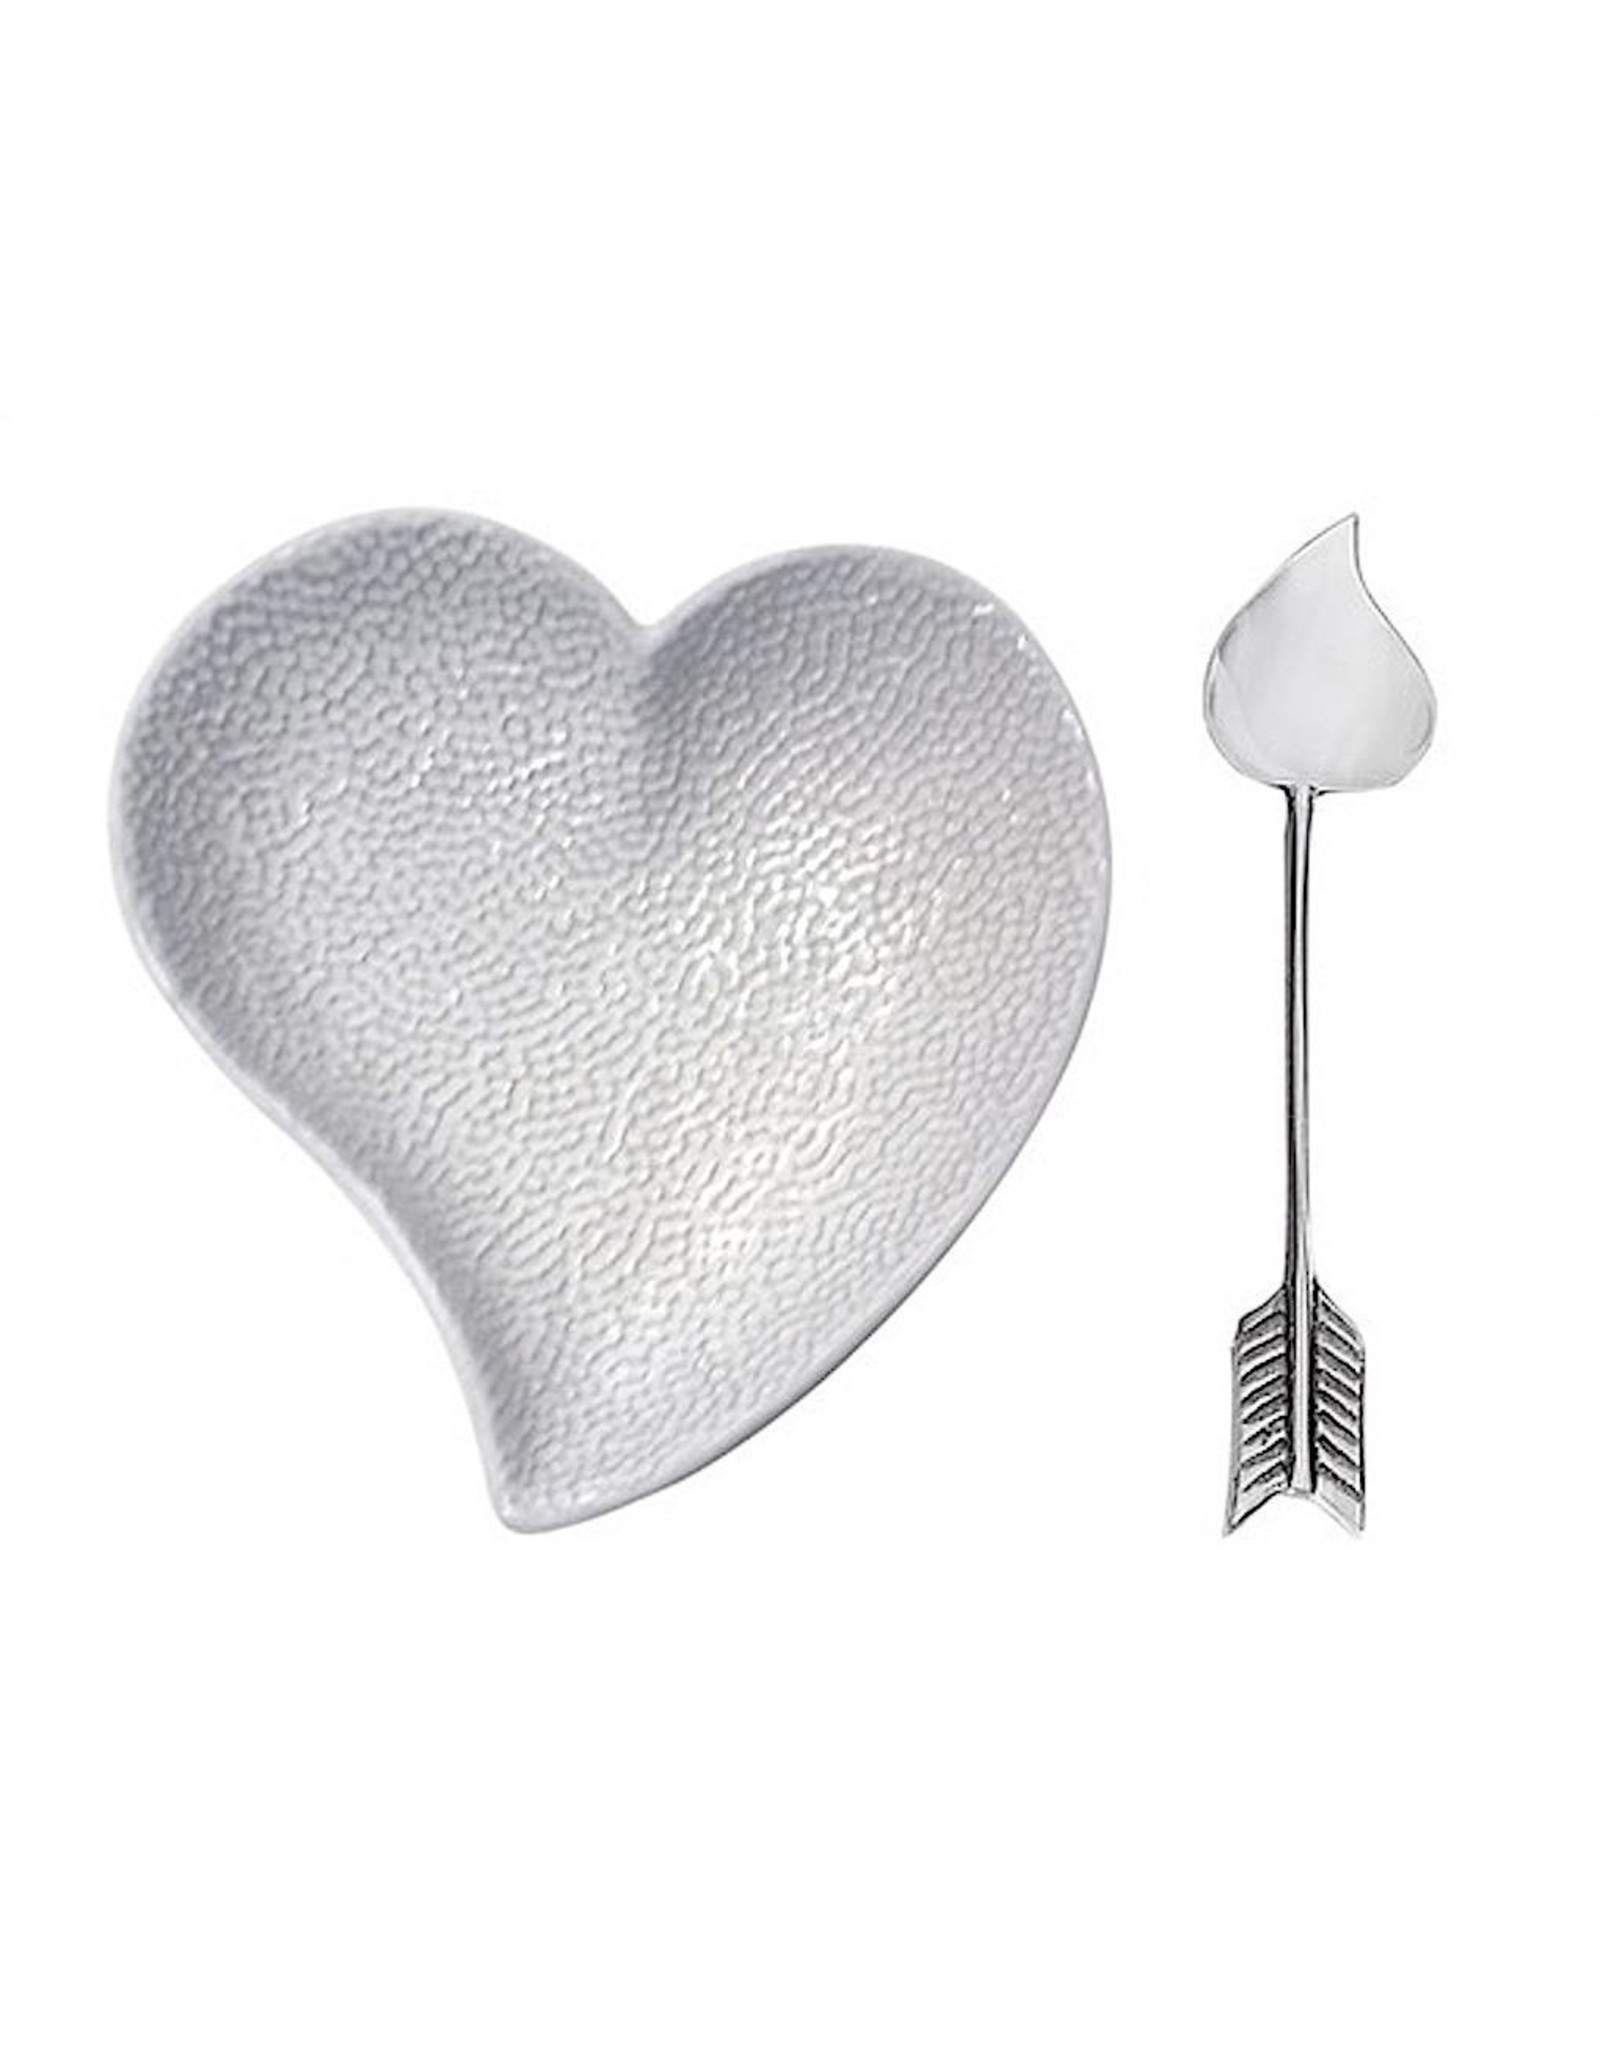 Mariposa Ceramic Heart Dish with Arrow Spoon